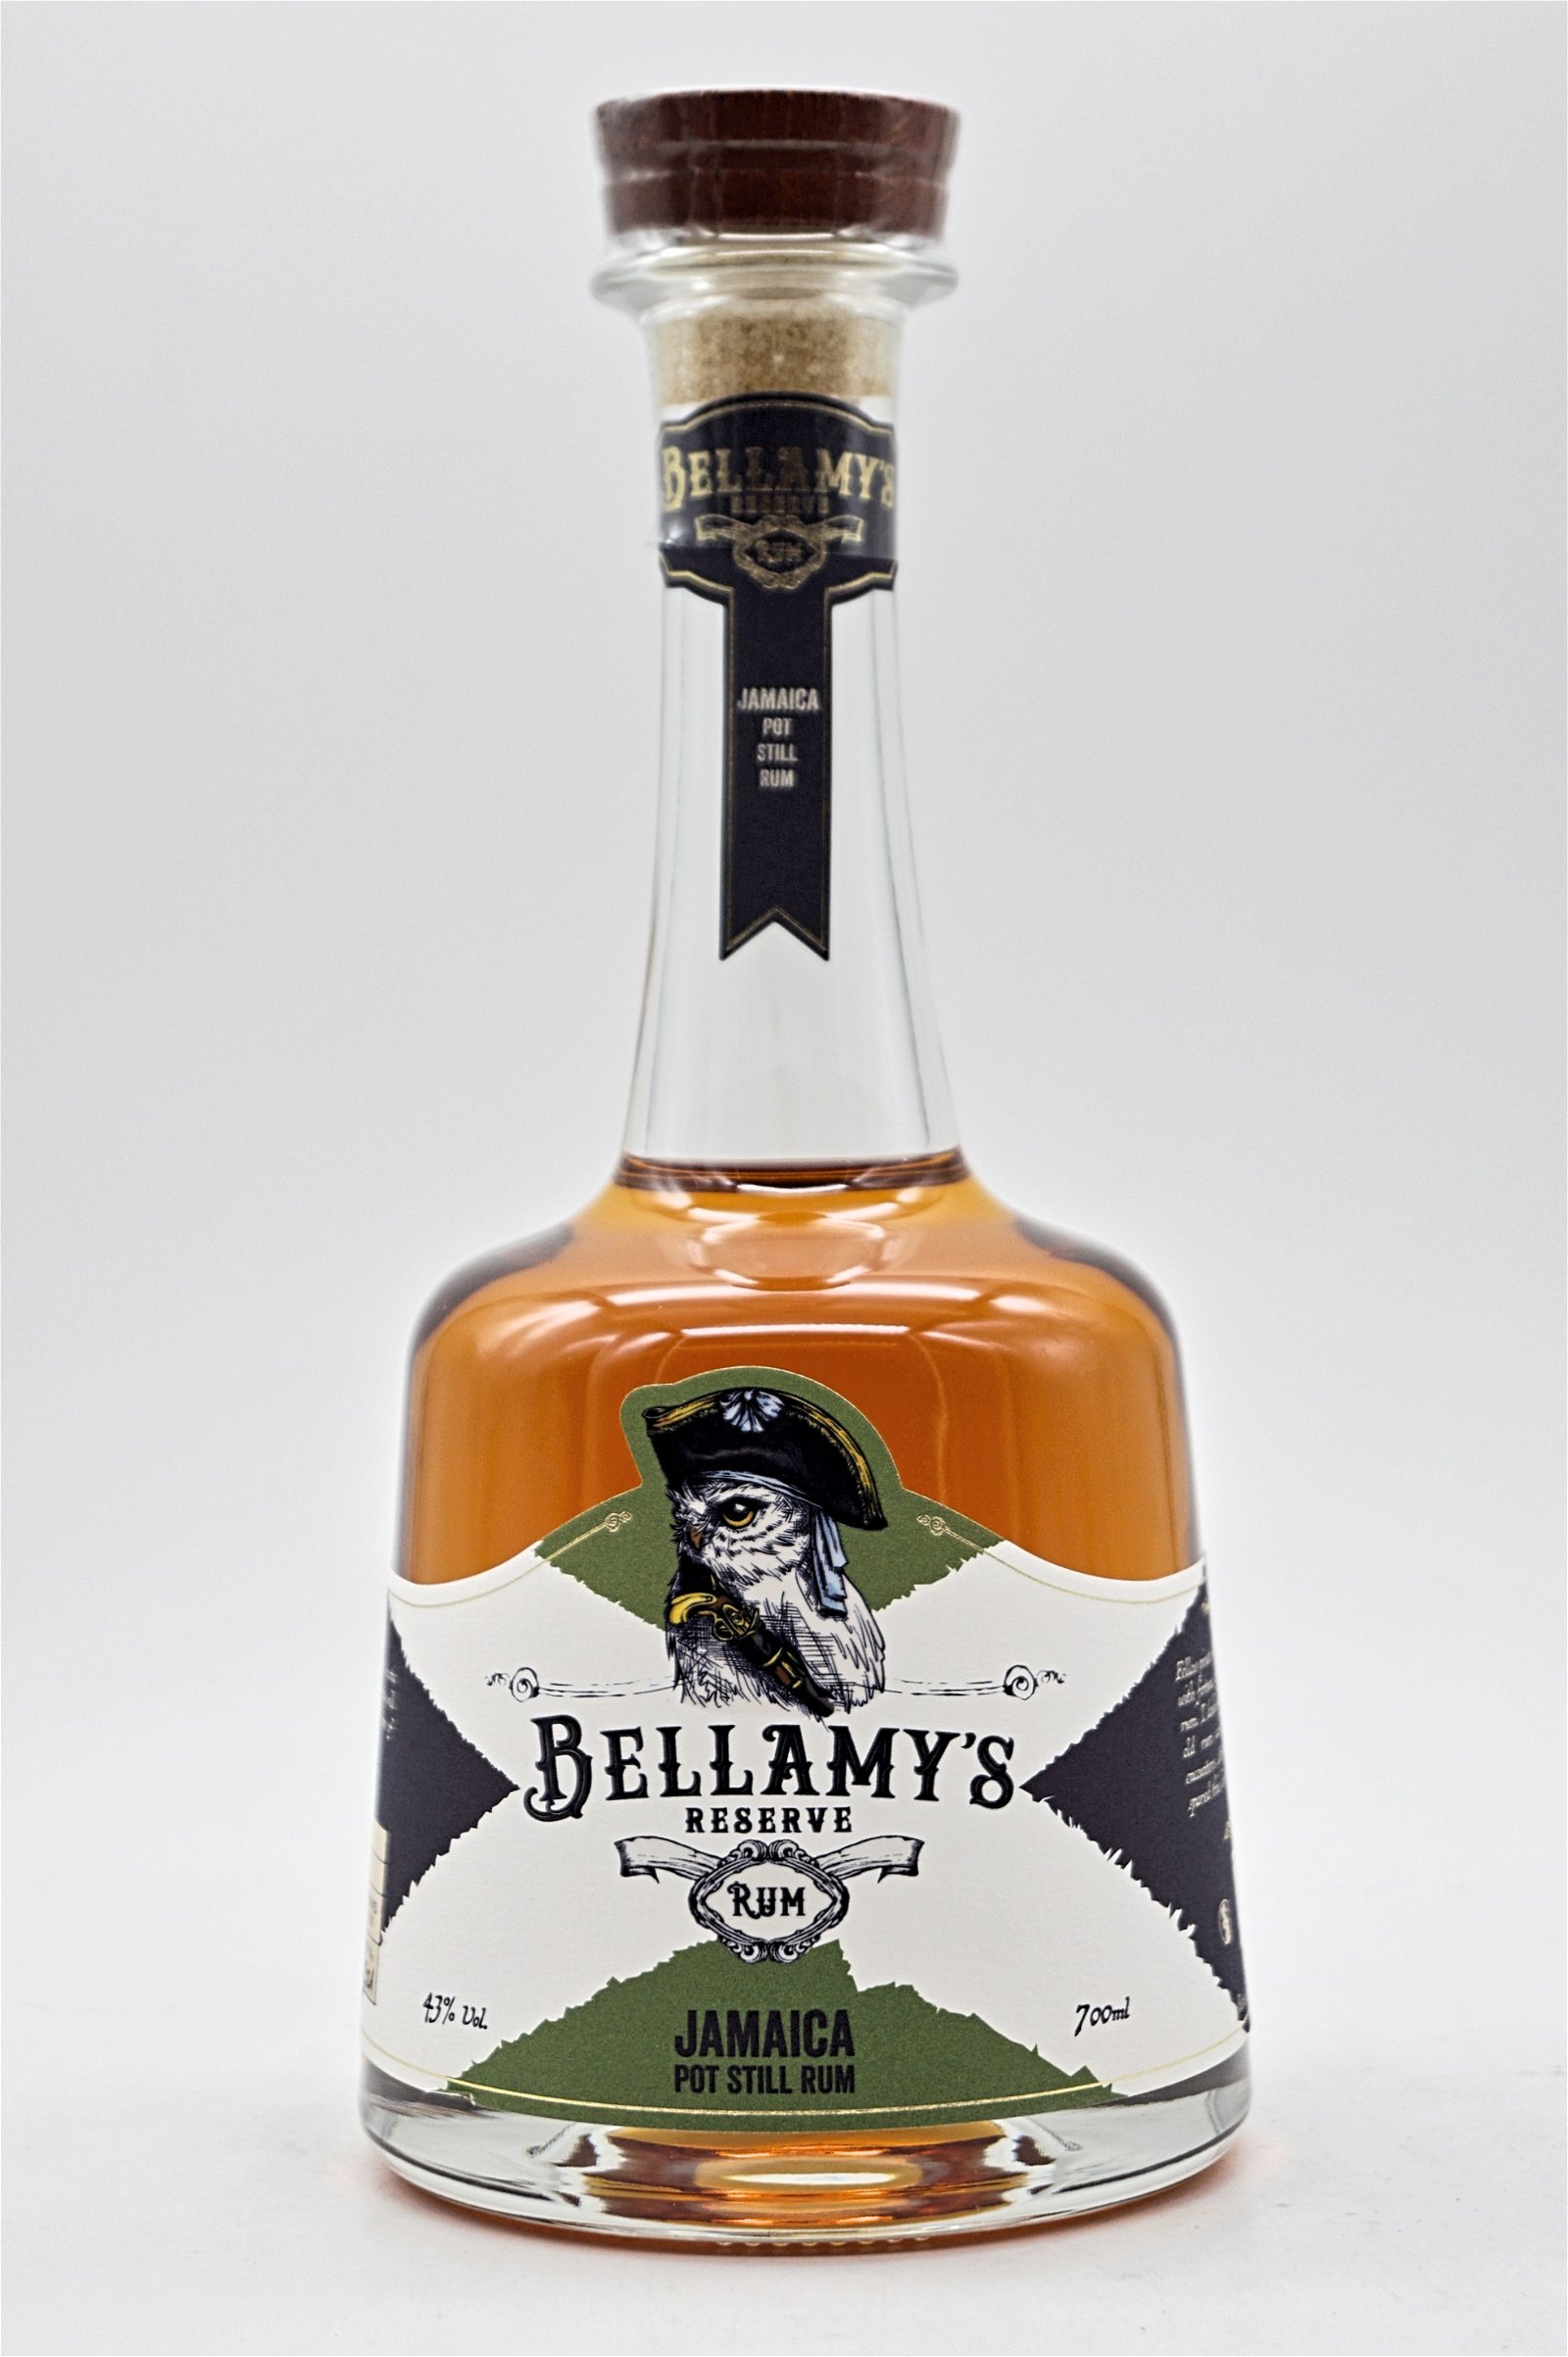 Bellamys Reserve Rum Jamaica Pot Still Rum 